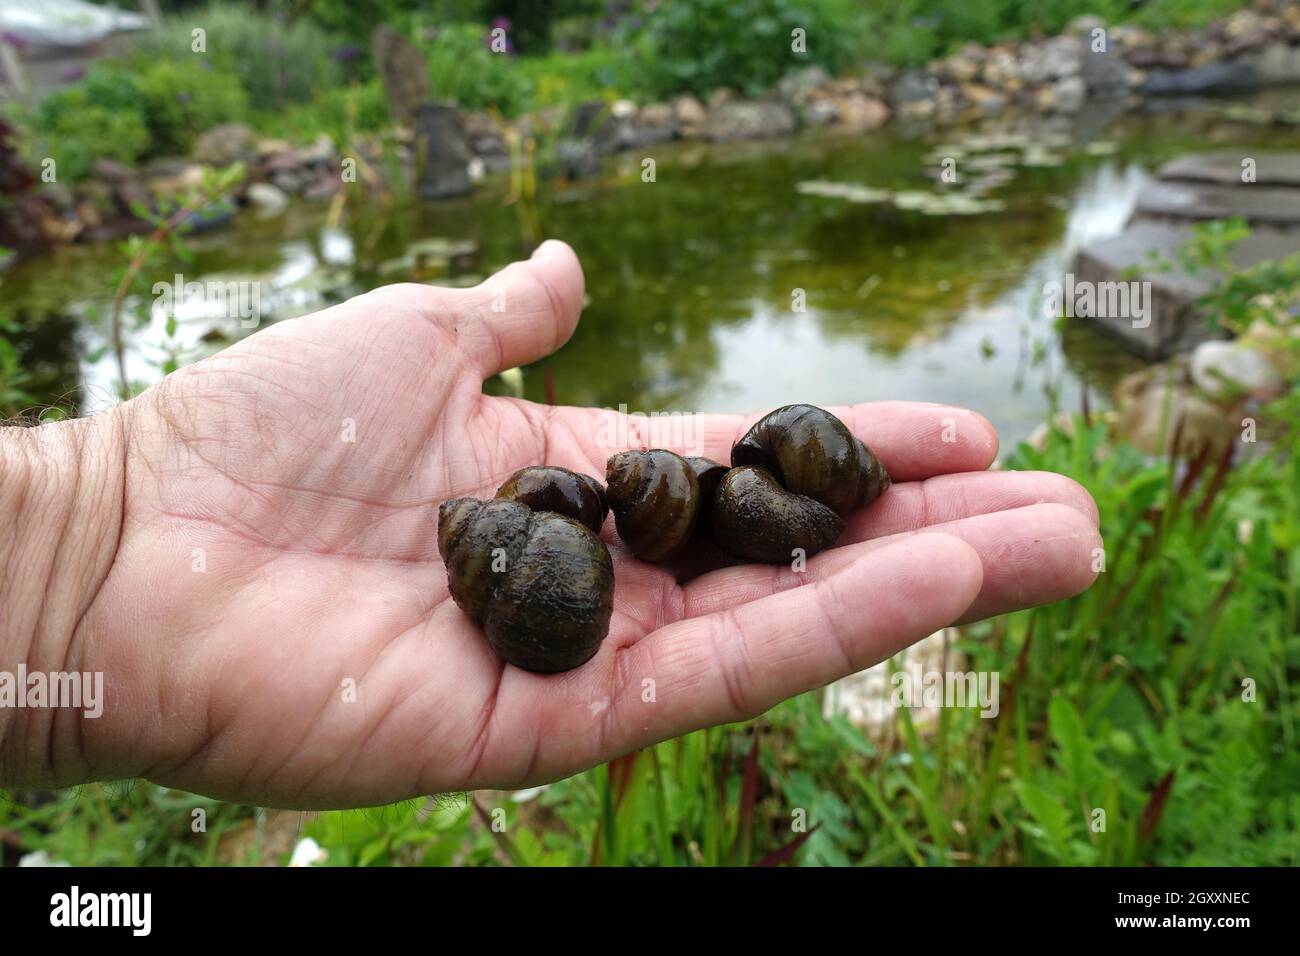 Stumpfe Sumpfdeckelschnecke, auch Flussdeckelschnecke (viviparus viviparus), auf einer hand liegend, Weilerswist, Nordrhein-Westfalen, Deutschland Foto Stock